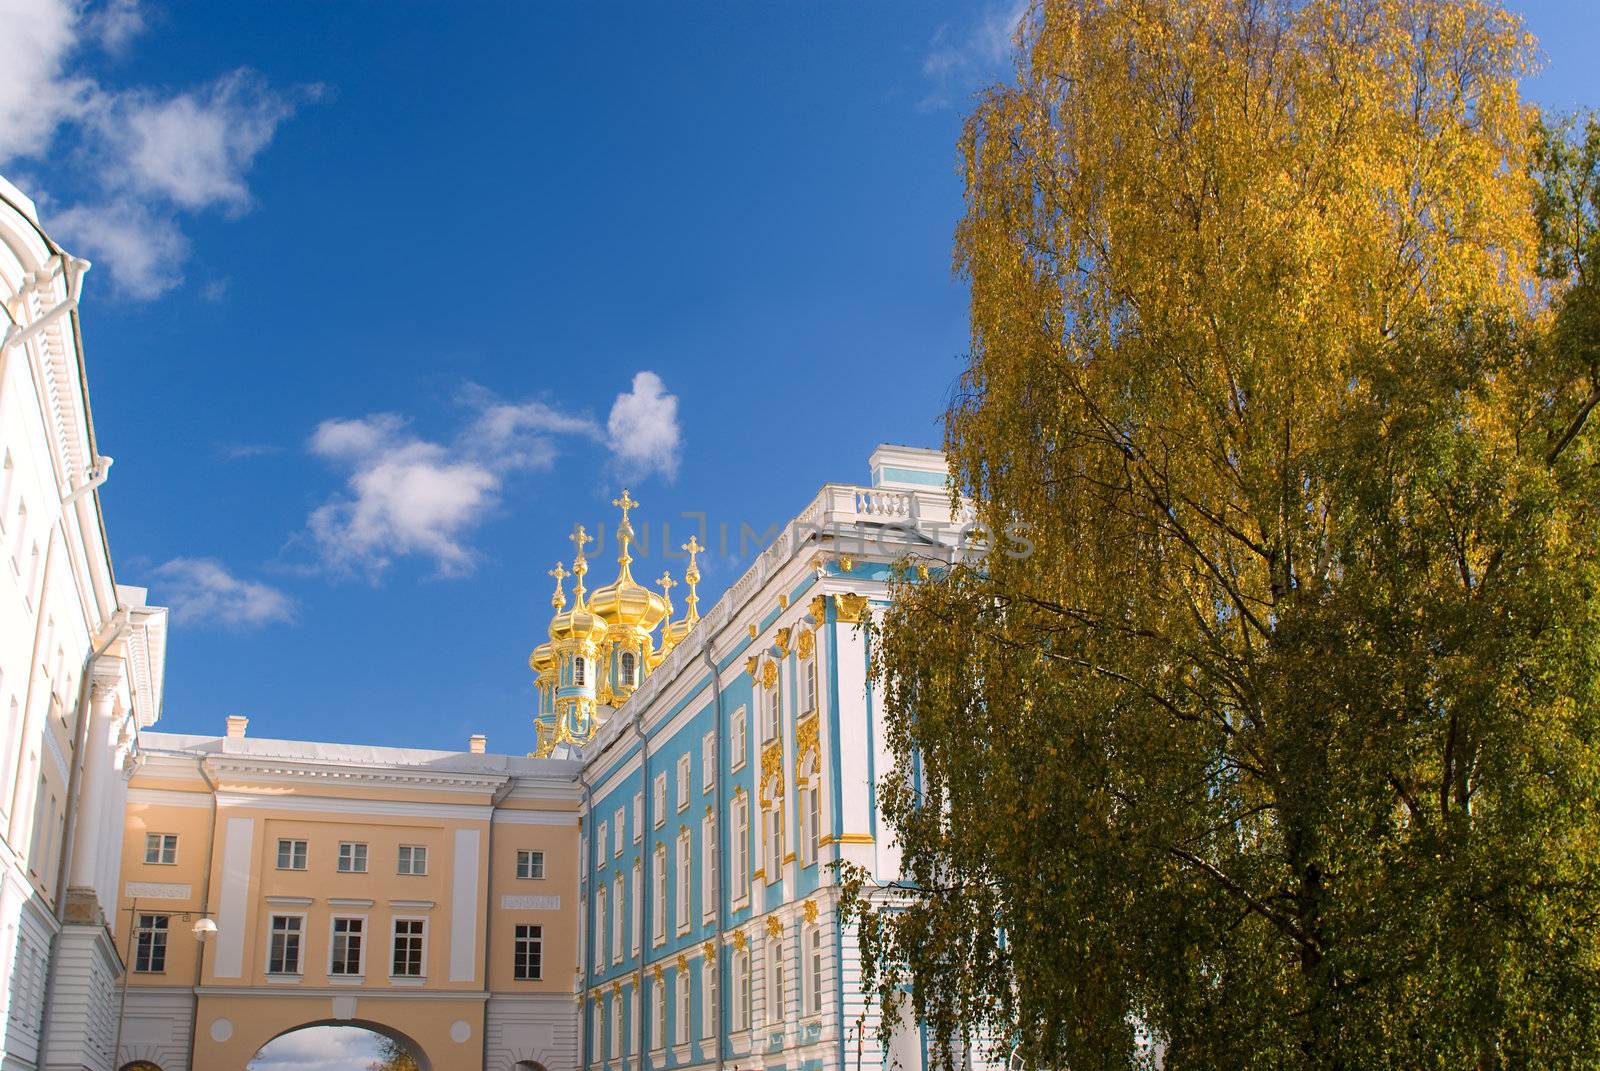 Pushkin's lyceum in Tsarskoe selo in autumn